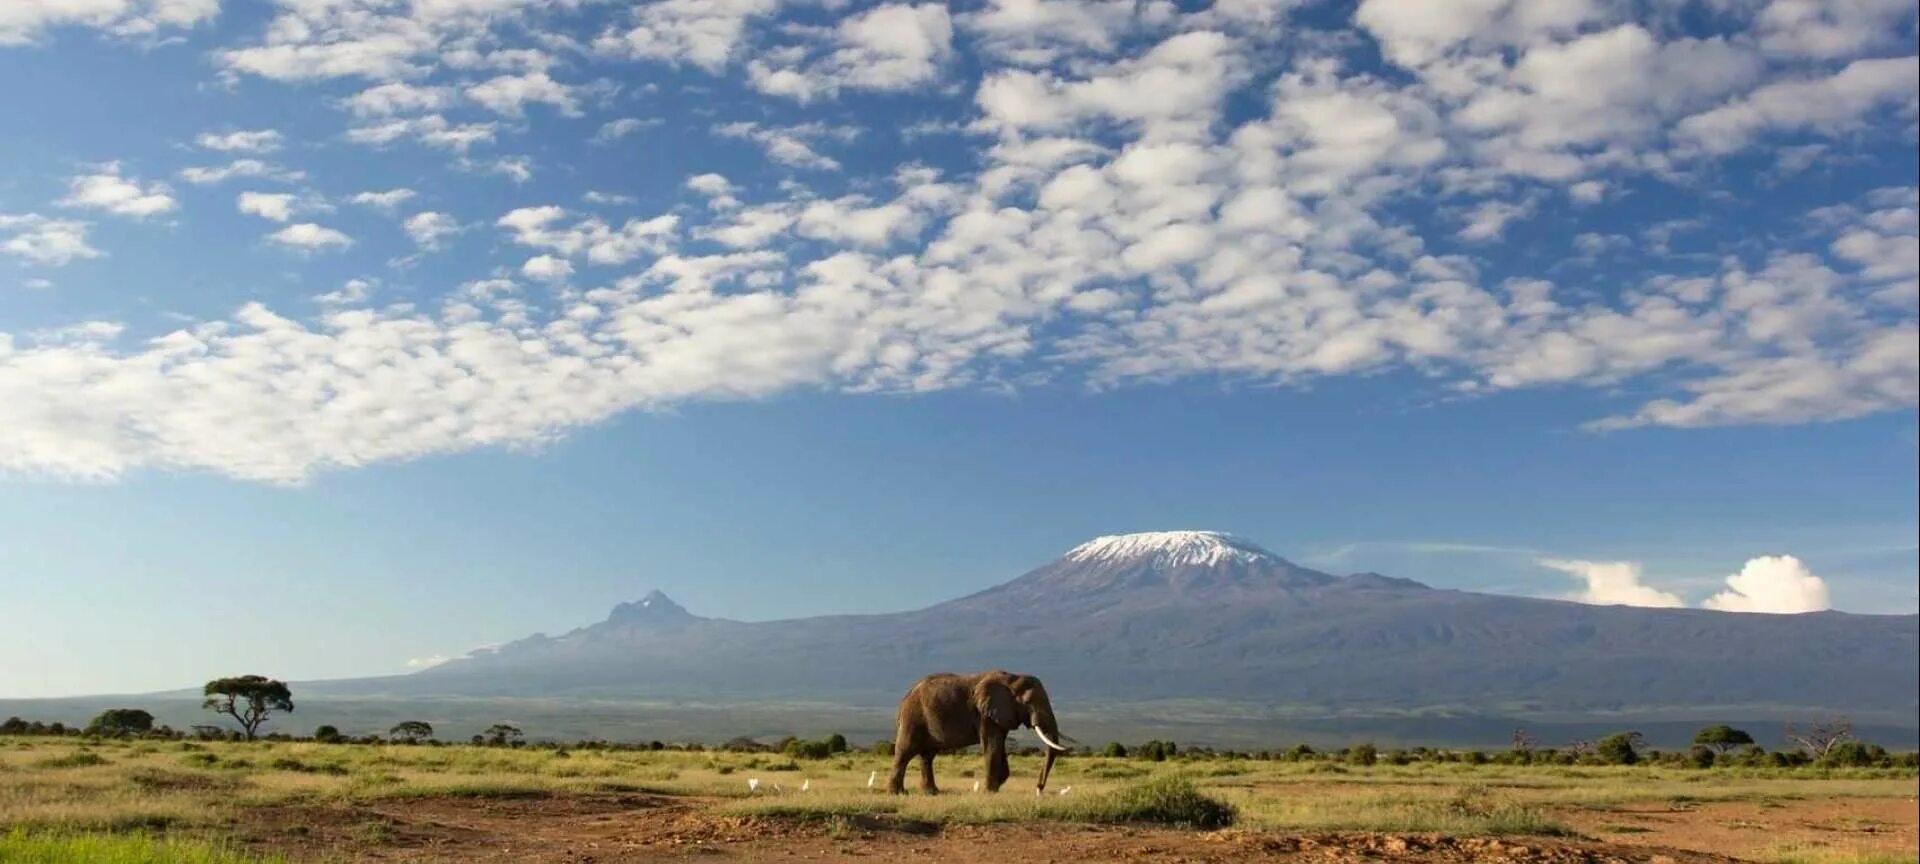 Танзания Килиманджаро. Амбосели Килиманджаро. Национальный парк Килиманджаро в Африке. Саванна гора Килиманджаро. See africa